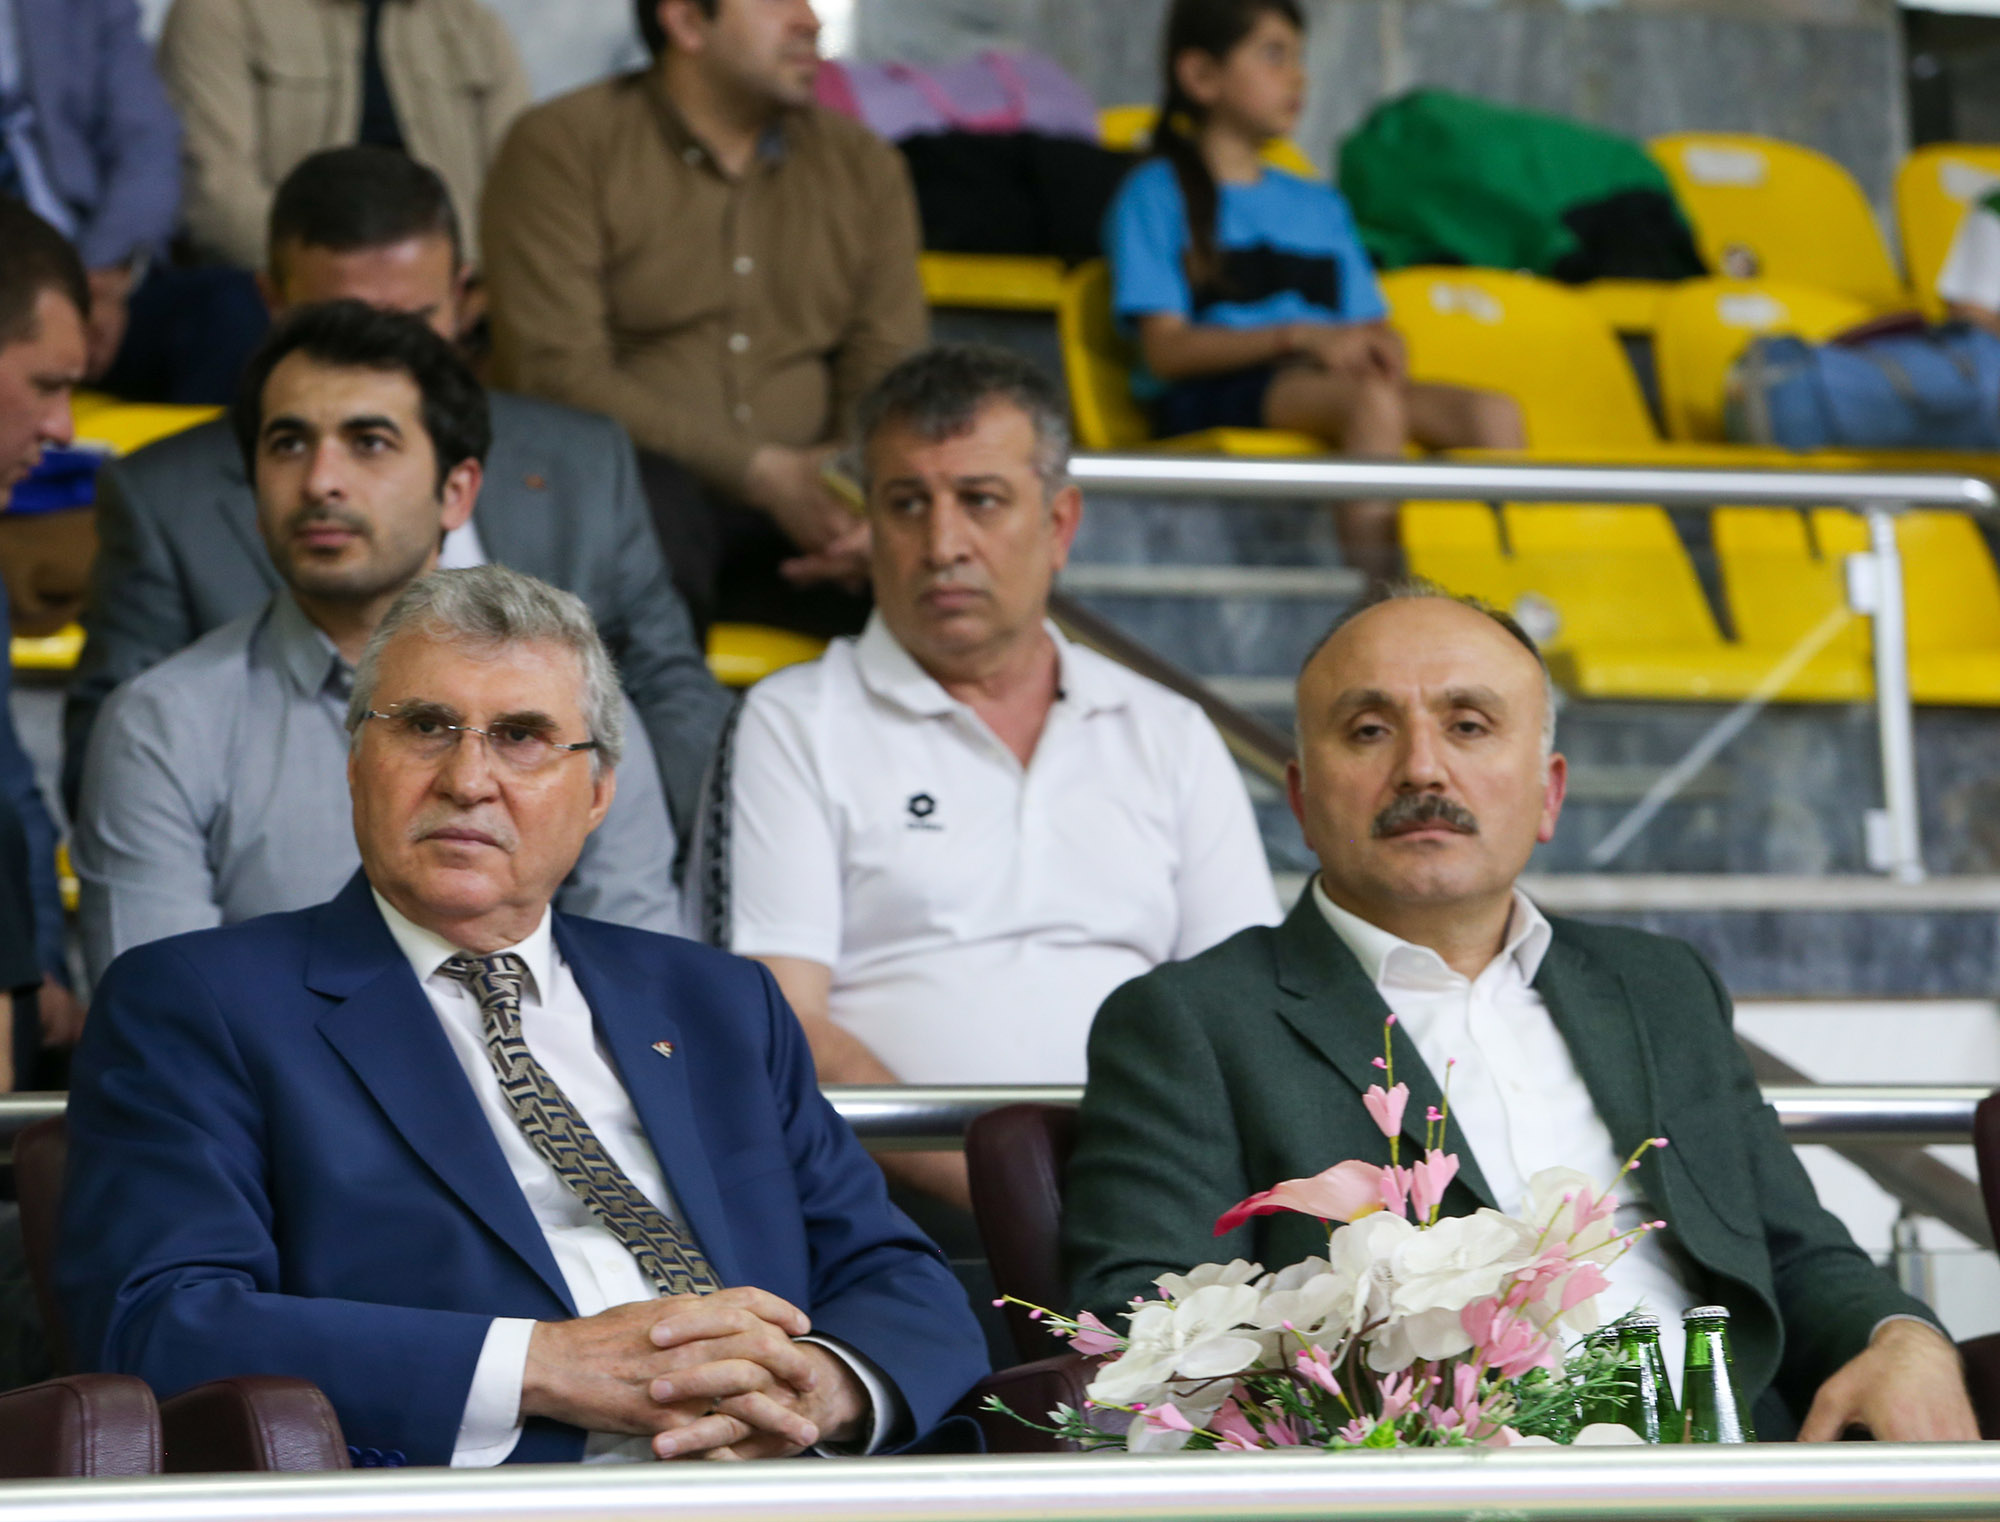 Türkiye Minikler Masa Tenisi Şampiyonası başladı